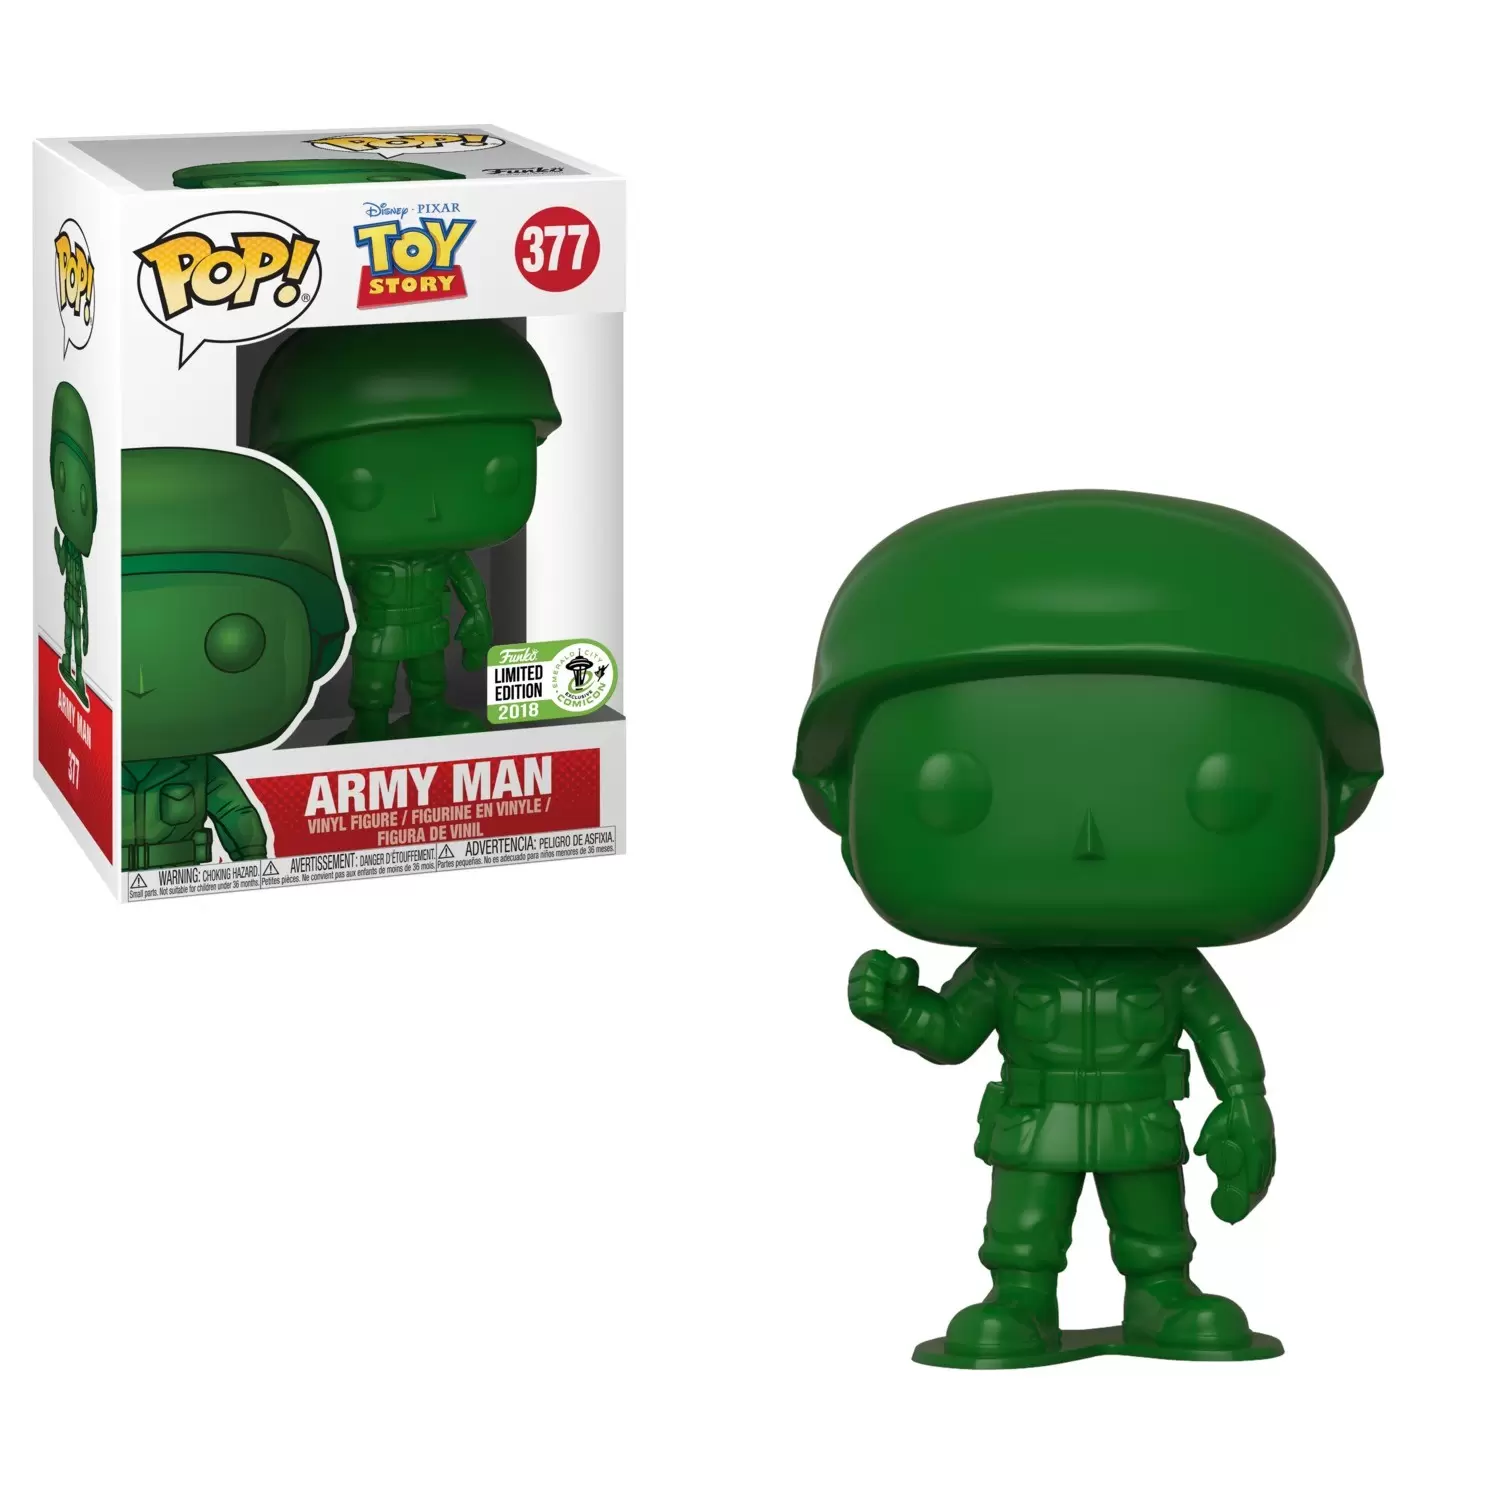 POP! Disney - Toy Story - Army Man